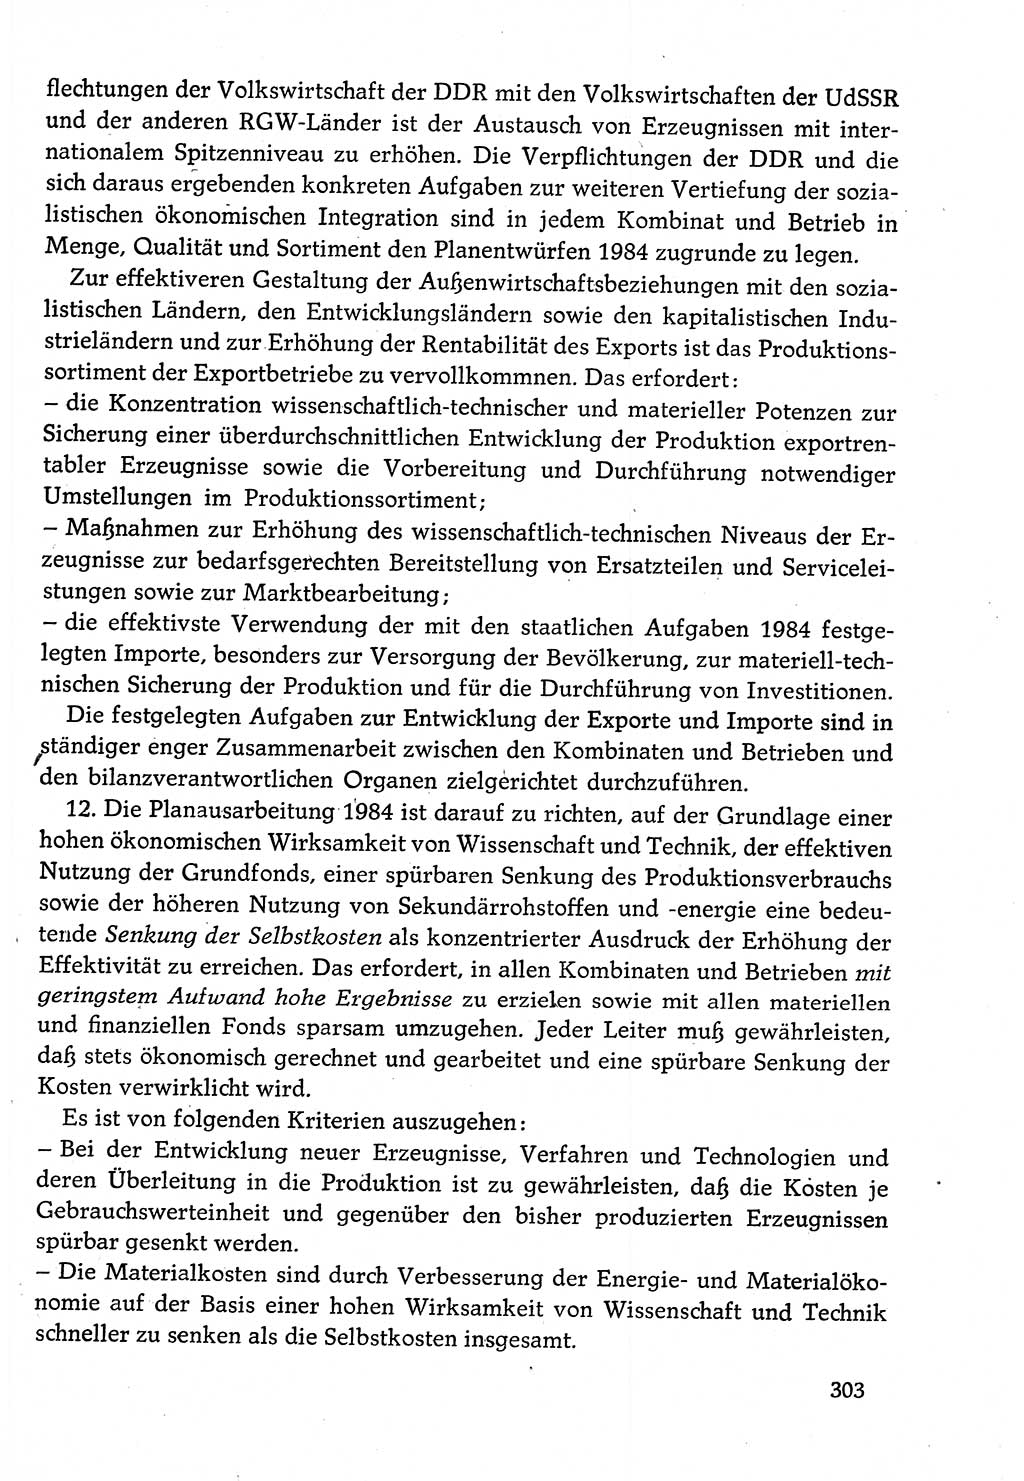 Dokumente der Sozialistischen Einheitspartei Deutschlands (SED) [Deutsche Demokratische Republik (DDR)] 1982-1983, Seite 303 (Dok. SED DDR 1982-1983, S. 303)